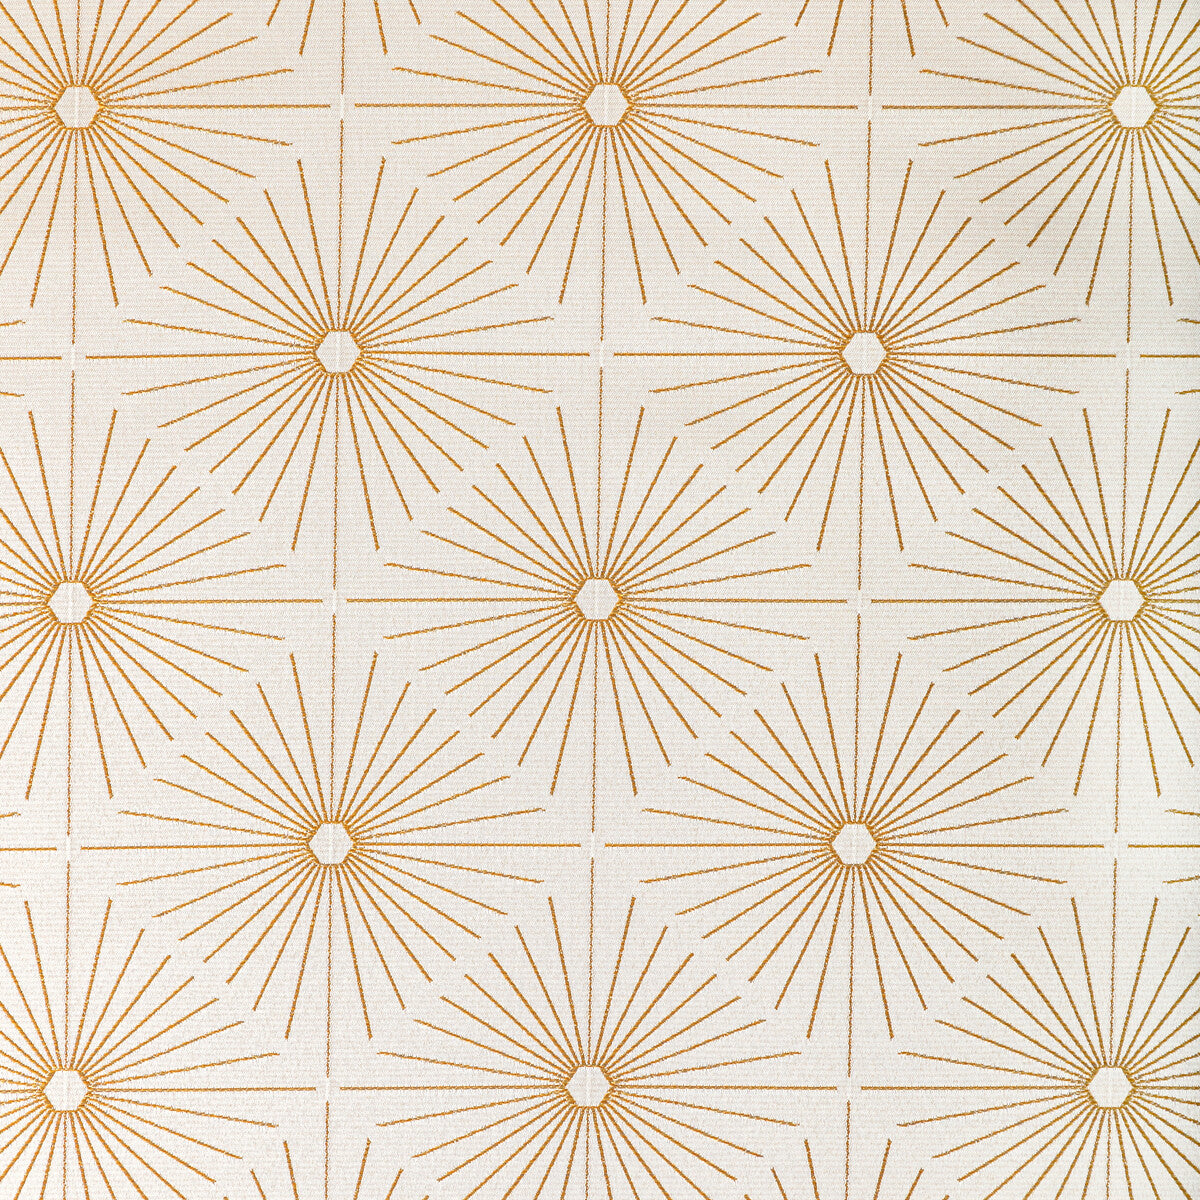 Kravet Design fabric in 36751-416 color - pattern 36751.416.0 - by Kravet Design